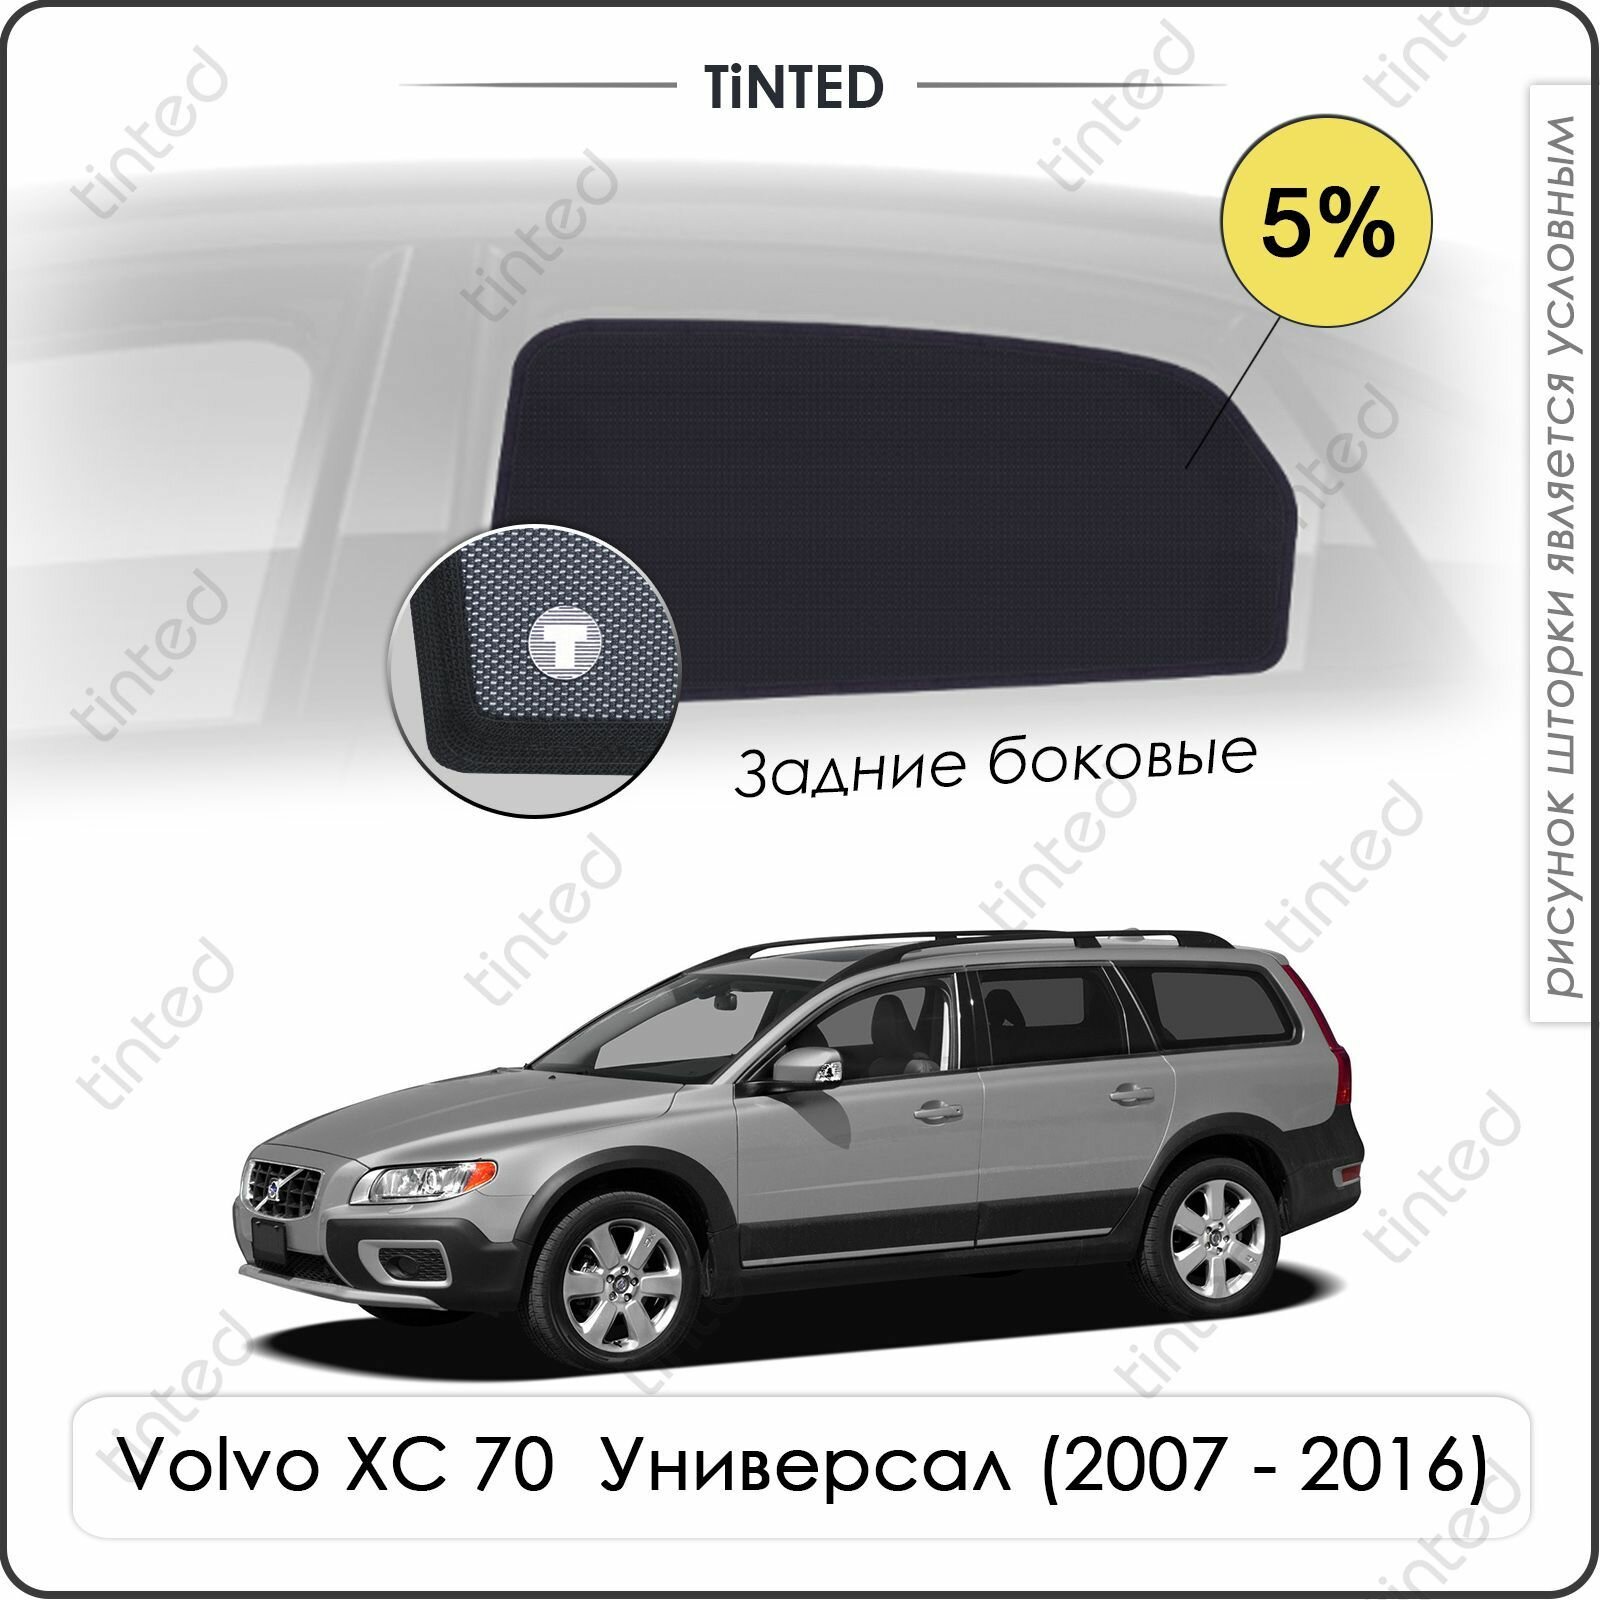 Шторки на автомобиль солнцезащитные Volvo XC 70 3 Универсал 5дв. (2007 - 2016) на задние двери 5%, сетки от солнца в машину вольво ХС 70, Каркасные автошторки Premium